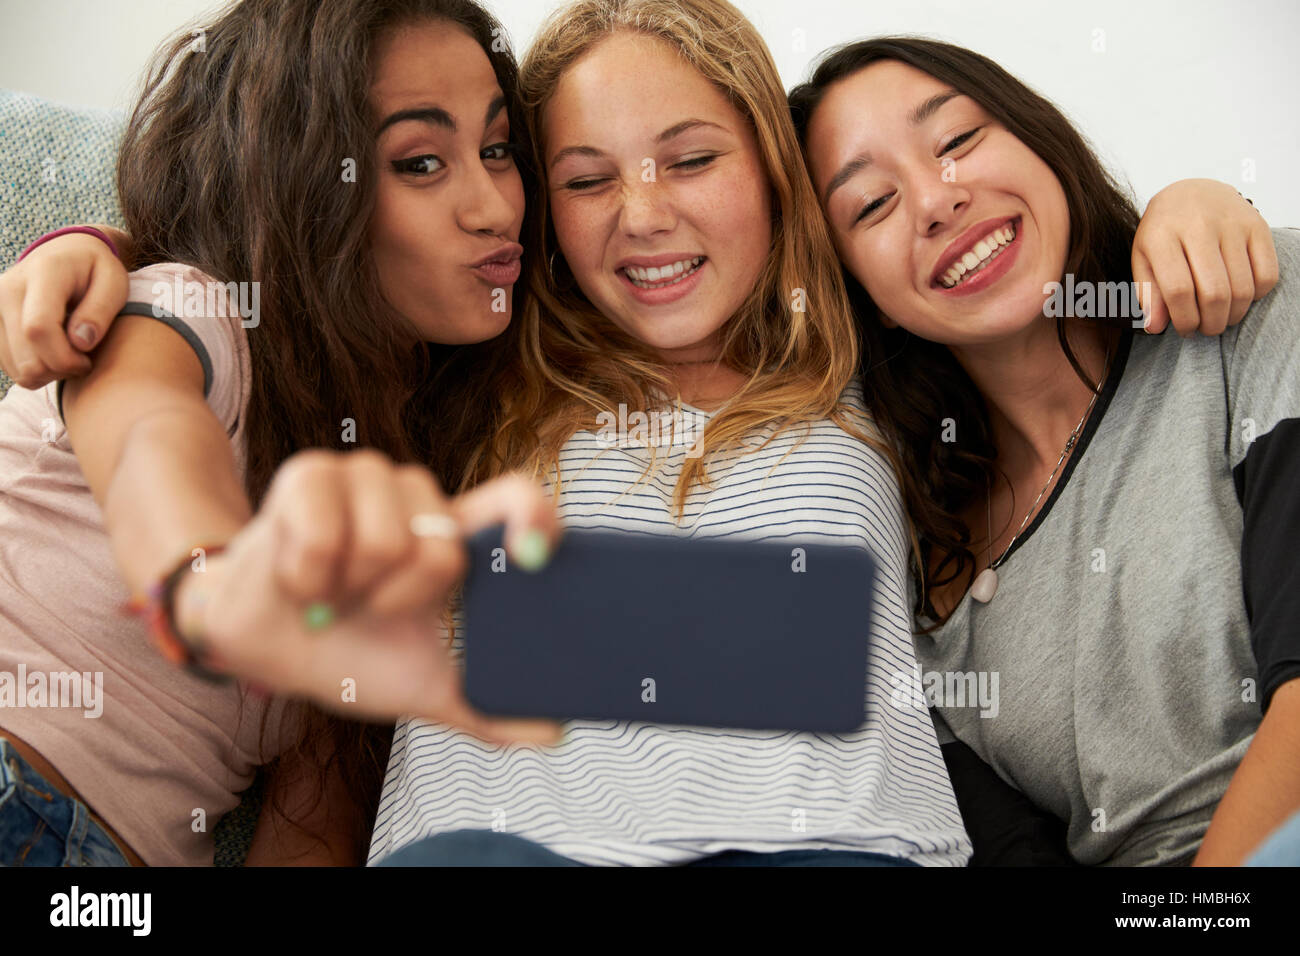 Tre ragazze adolescenti tenendo selfie a casa, concentrarsi sulle ragazze Foto Stock